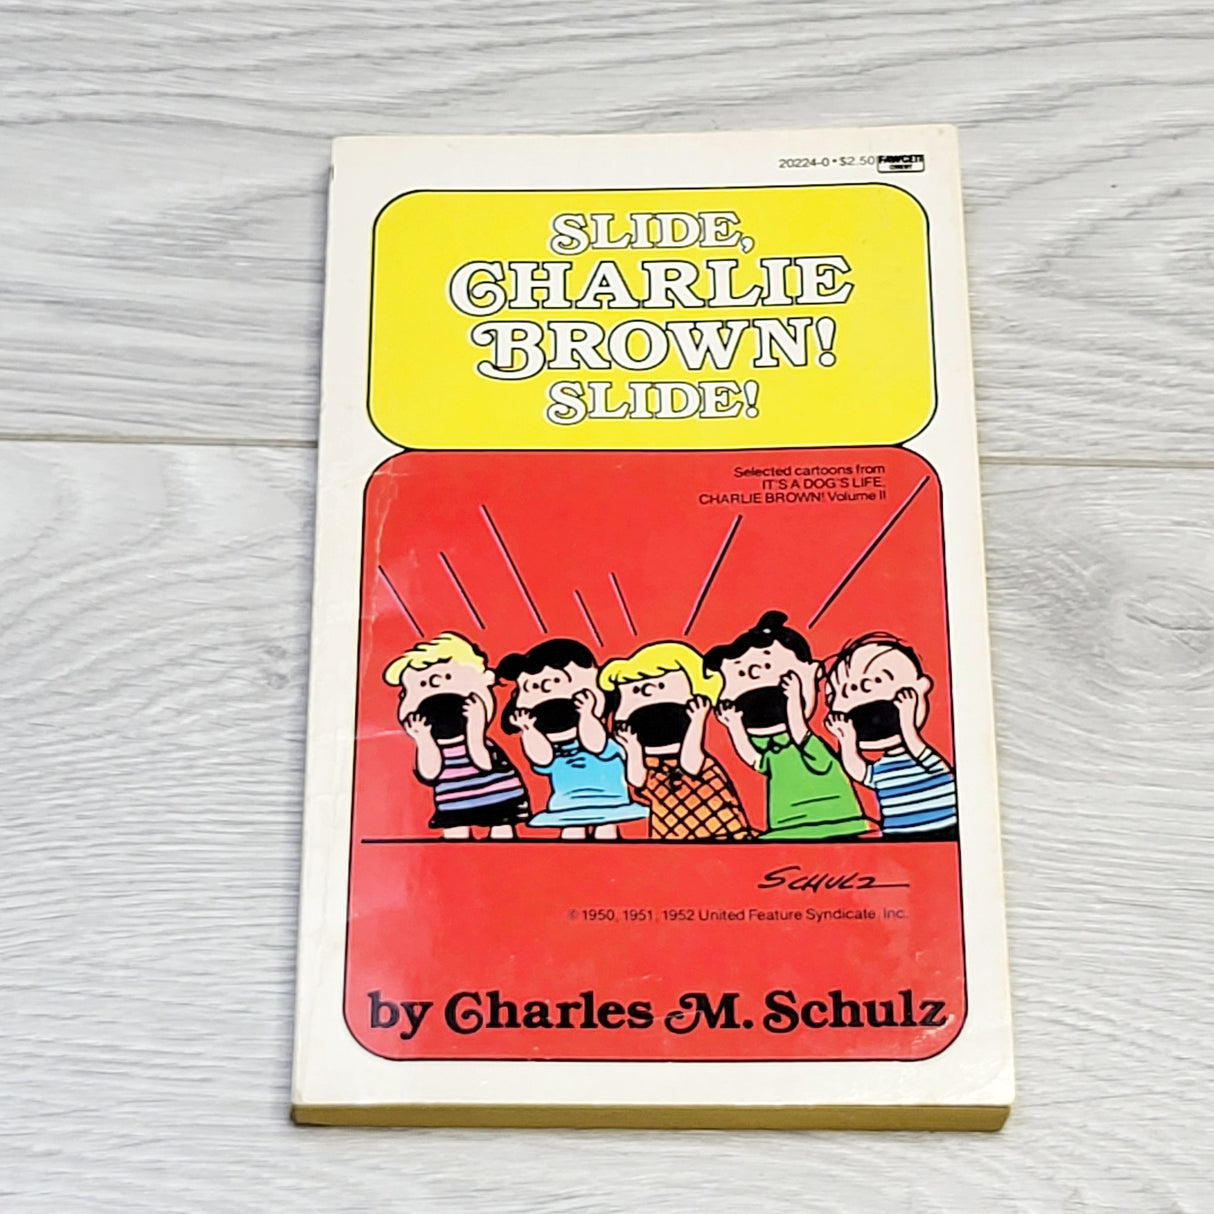 MSNDS2 - Slide Charlie Brown, Slide! Vintage soft cover graphic novel (1984)